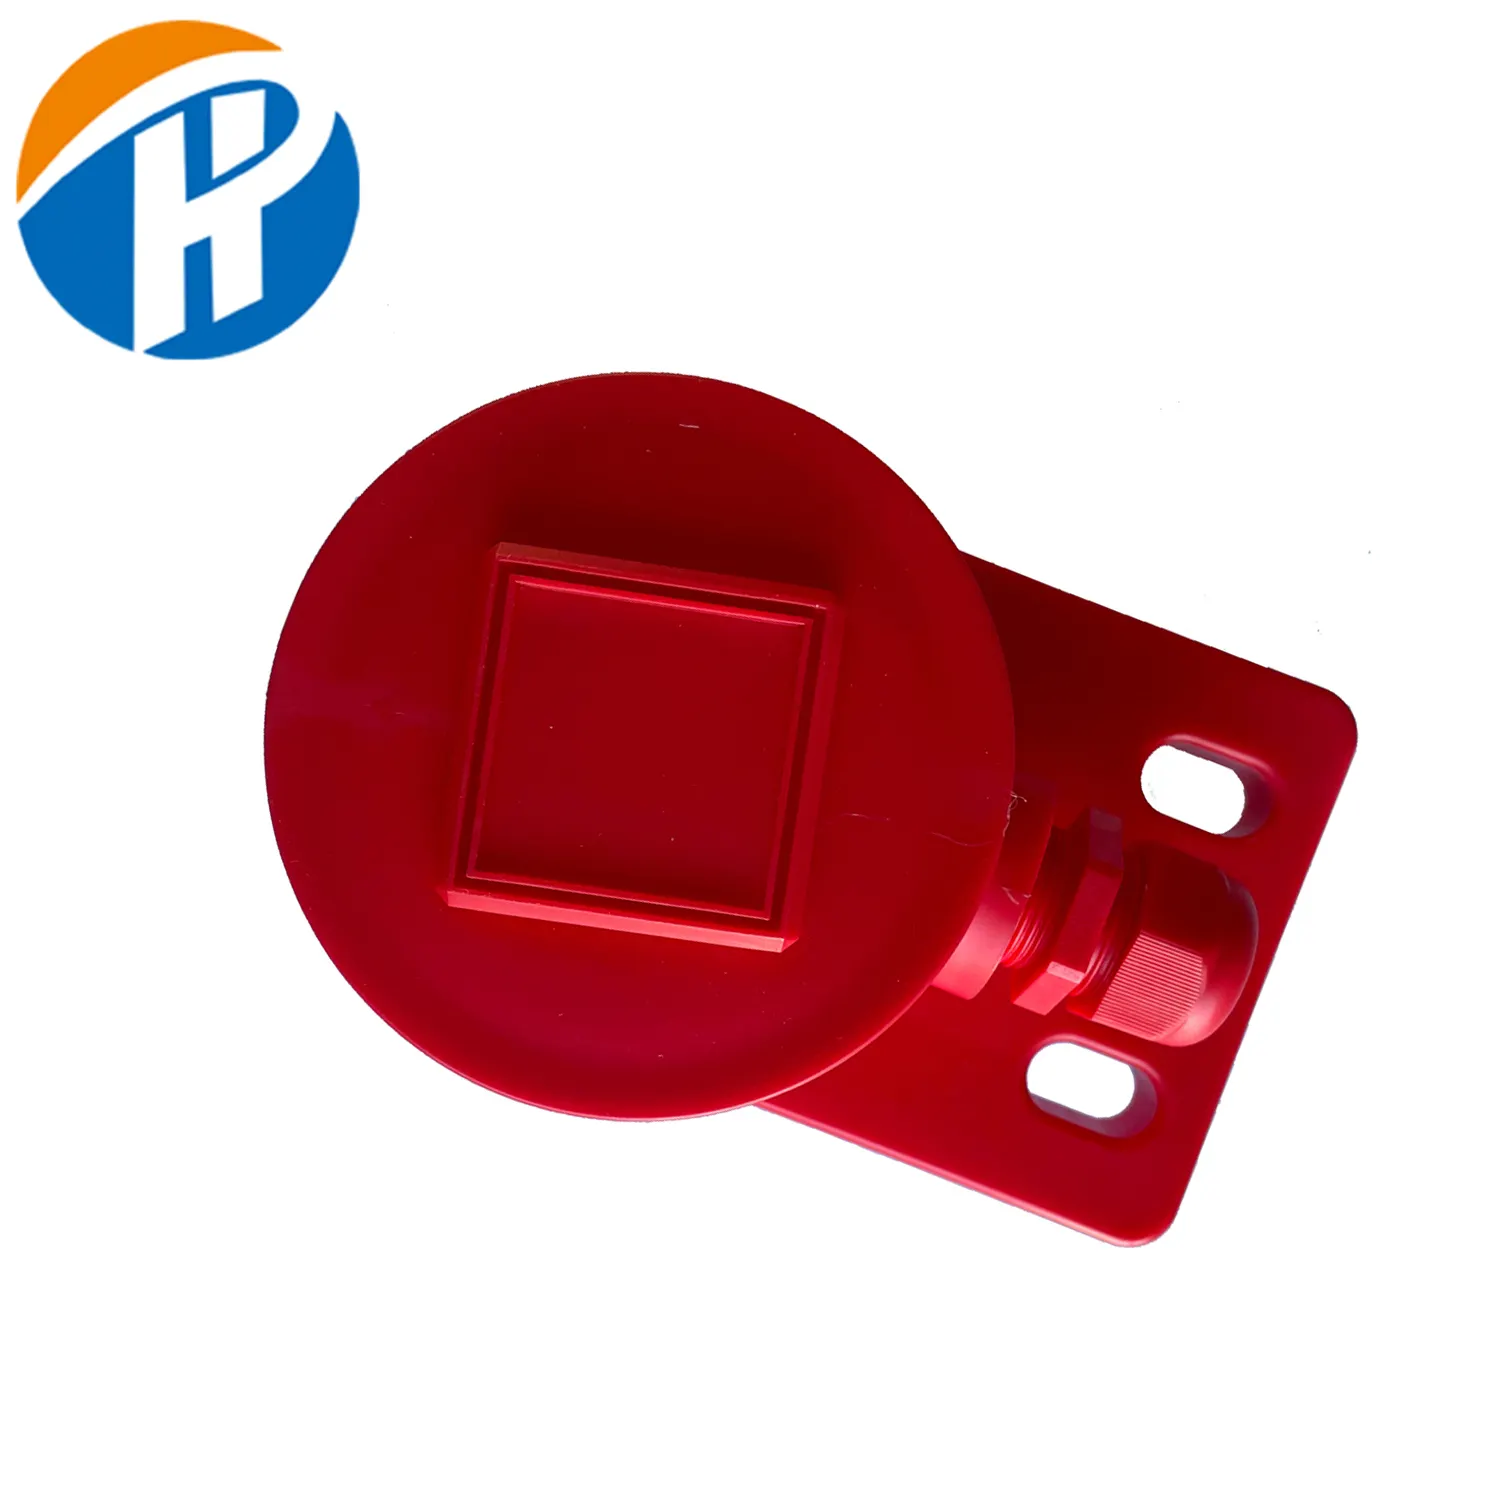 Hecho en China Caja de conexión de cable eléctrico Caja de protección de línea de plástico rojo Cubierta protectora de baquelita